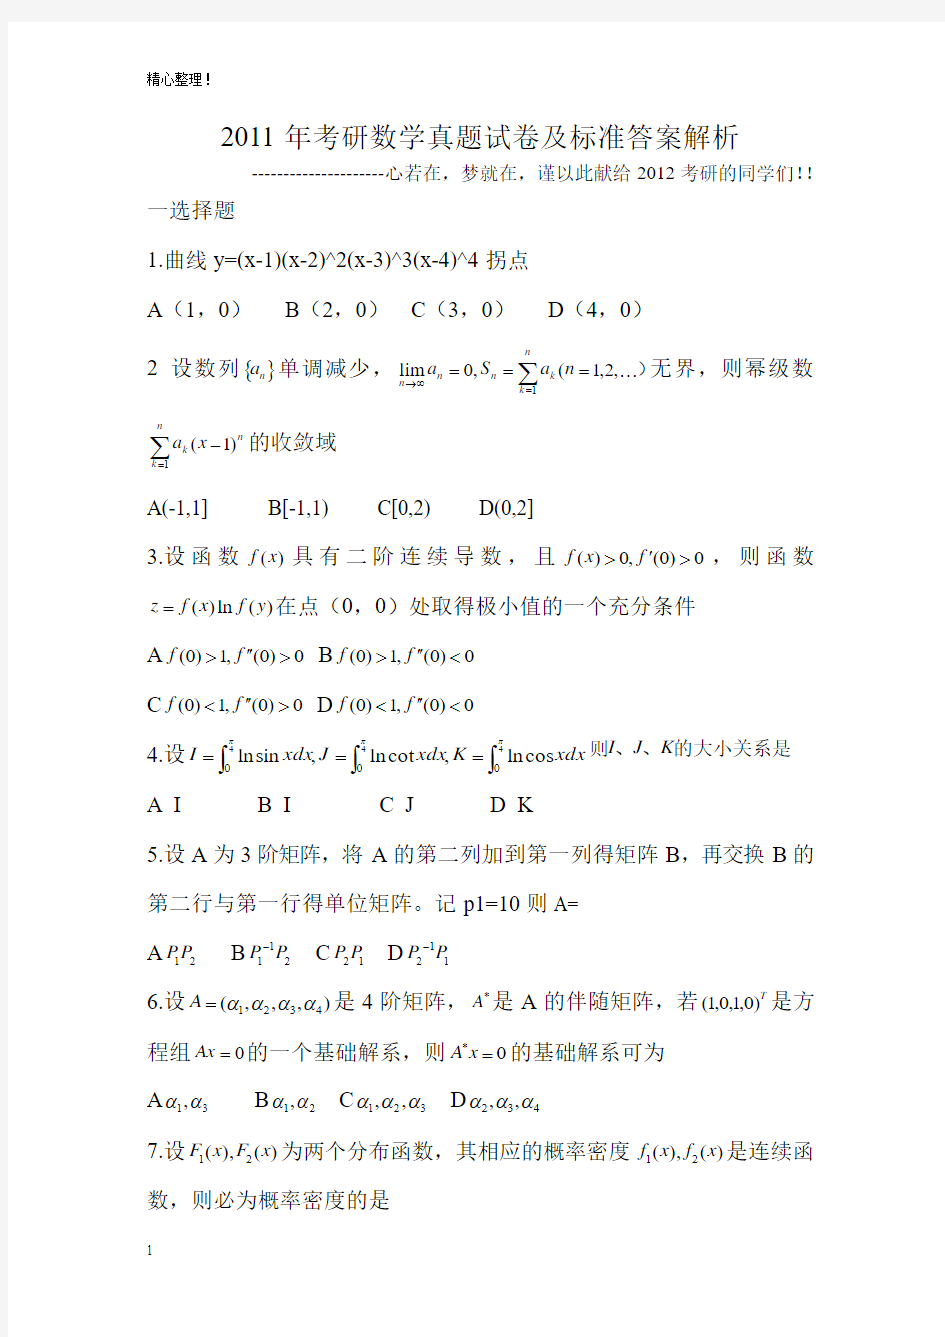 2011年考研数学真题及标准答案解析(考研必备!)